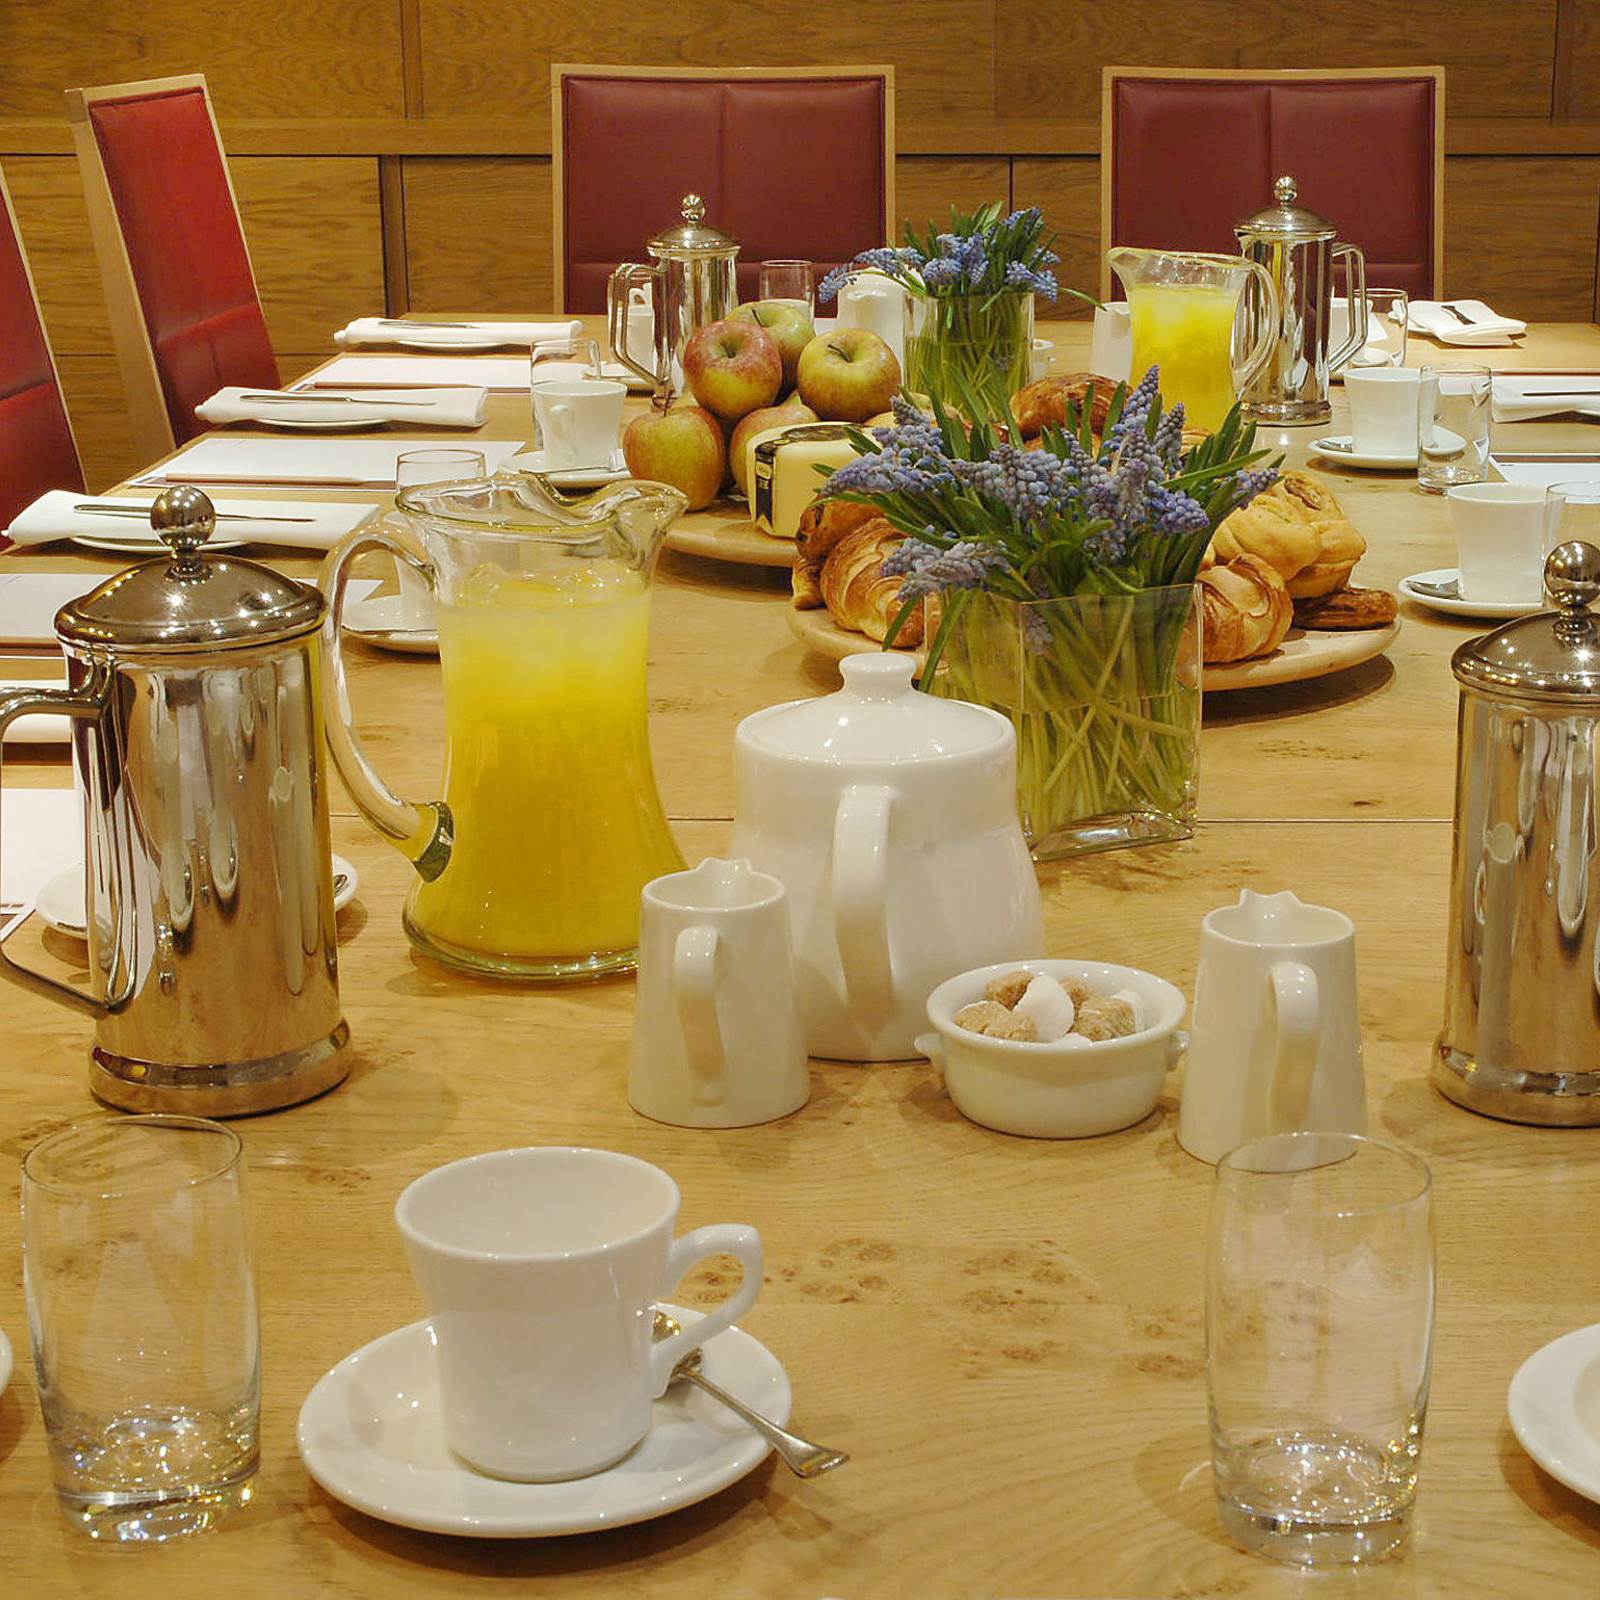 Breakfast meeting at Hope Street Hotel